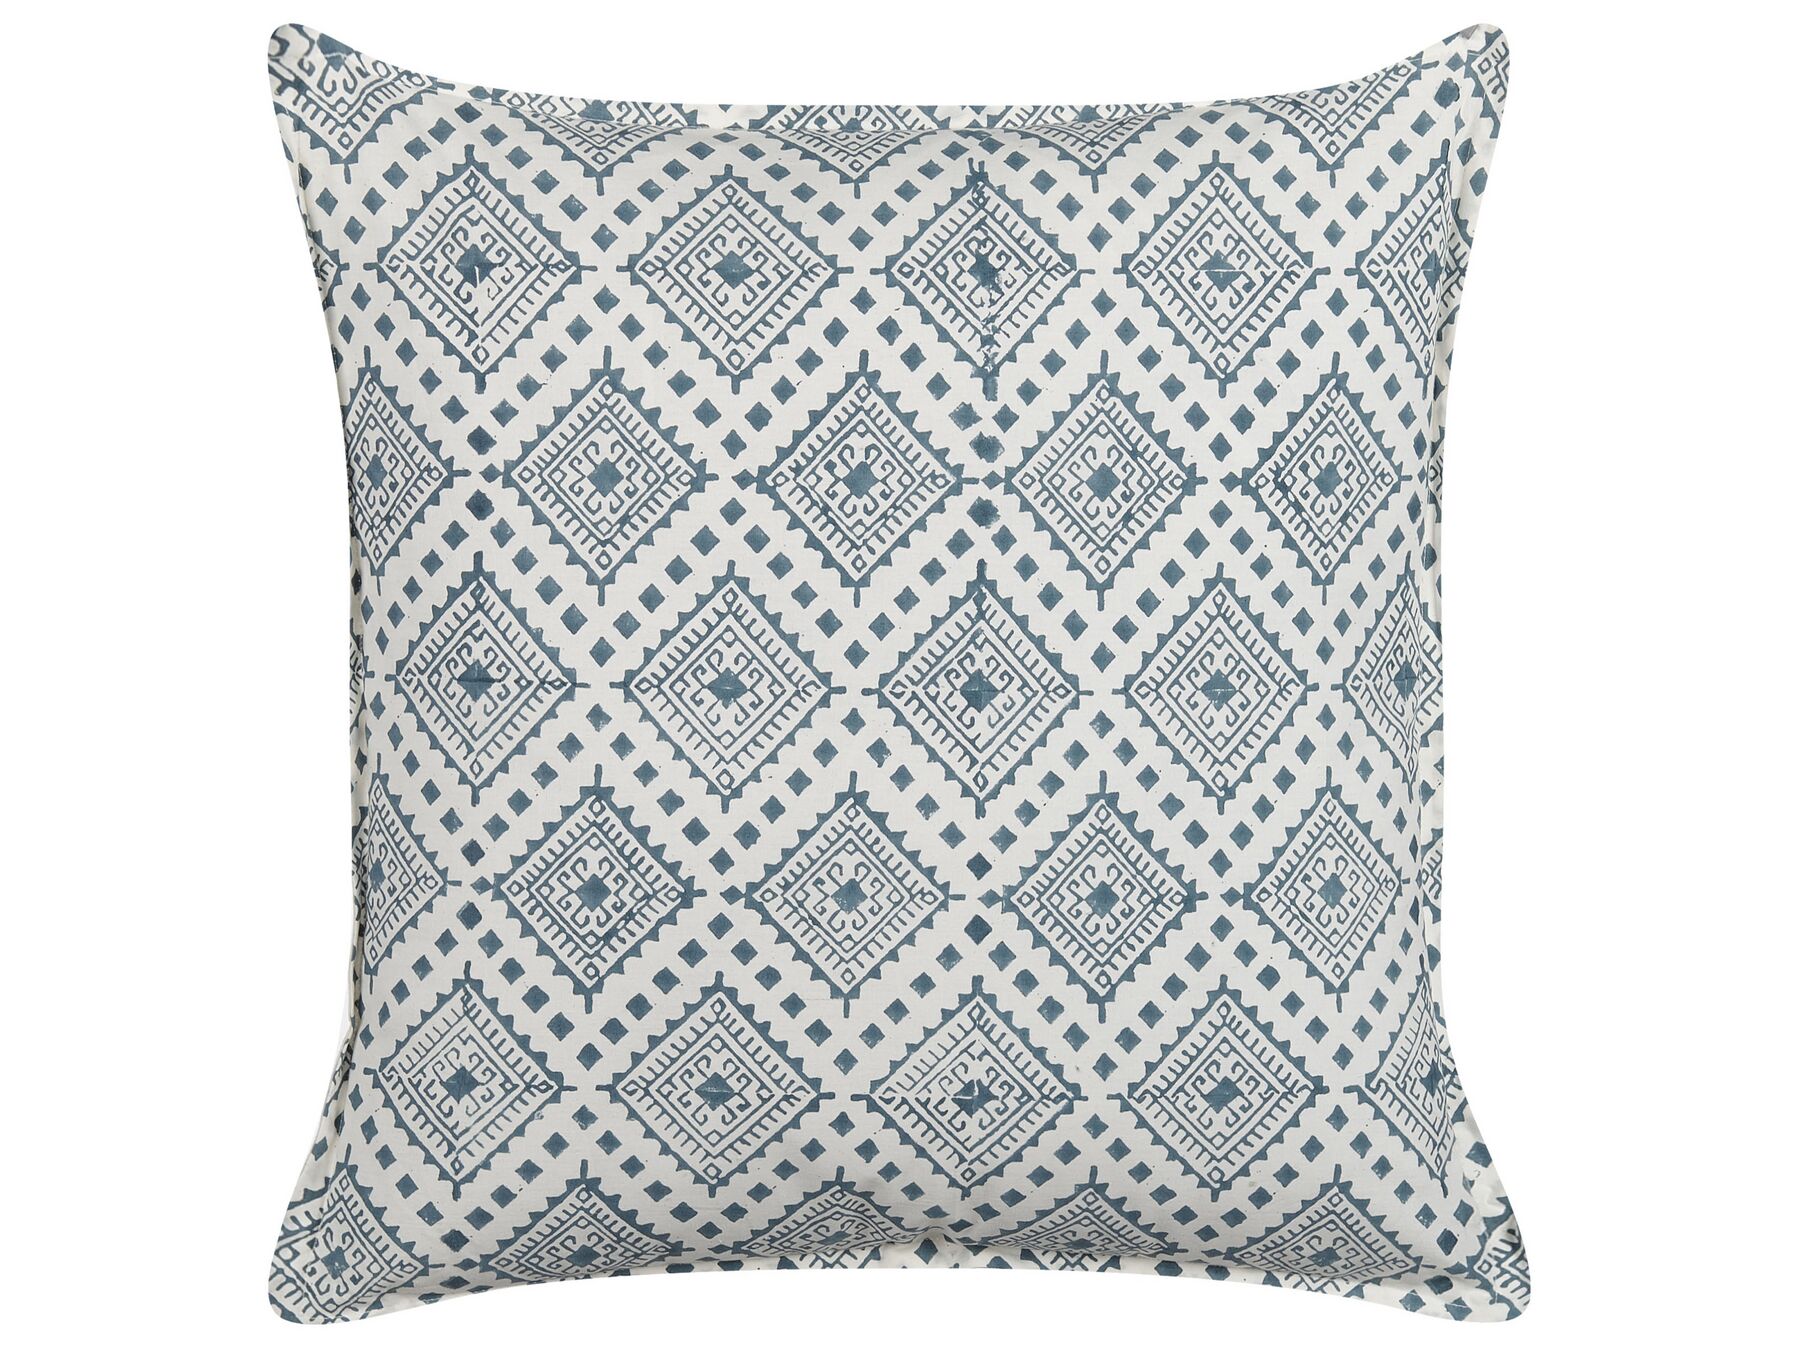 Almofada decorativa com padrão oriental em algodão azul e branco 45 x 45 cm CORDATA_838570